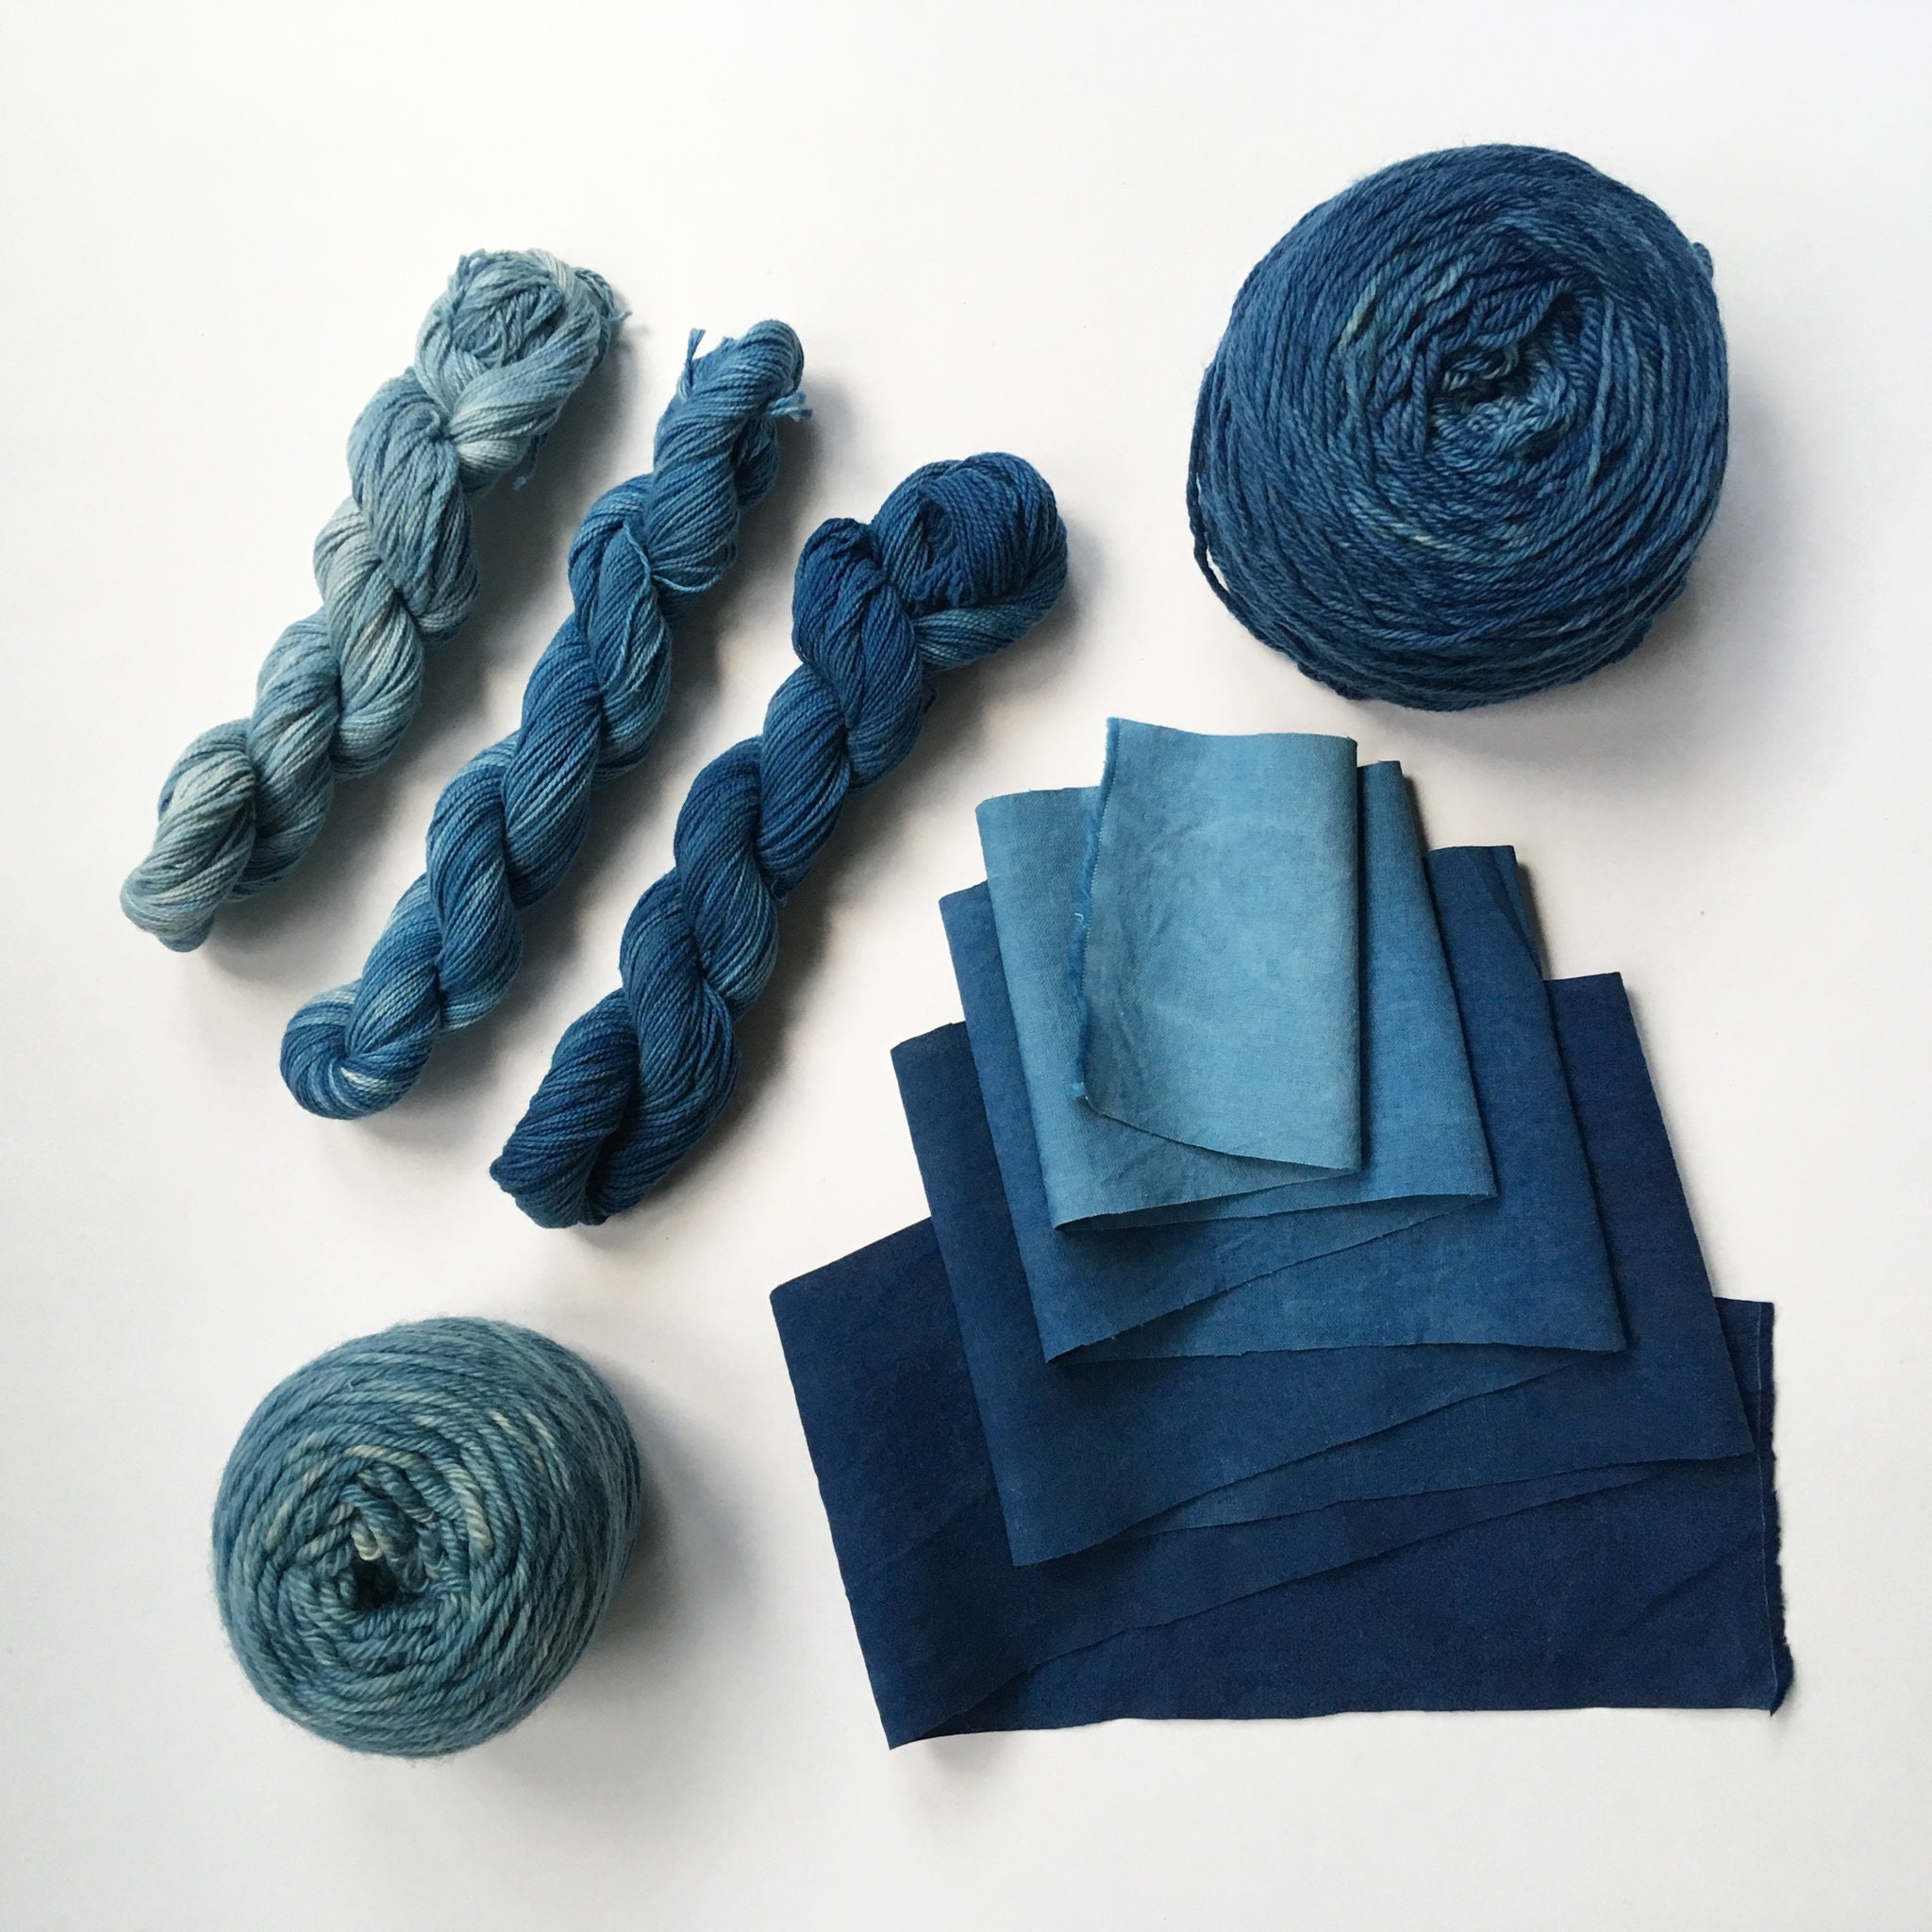 file under fiber: True Blue Indigo Dyeing - The Vat